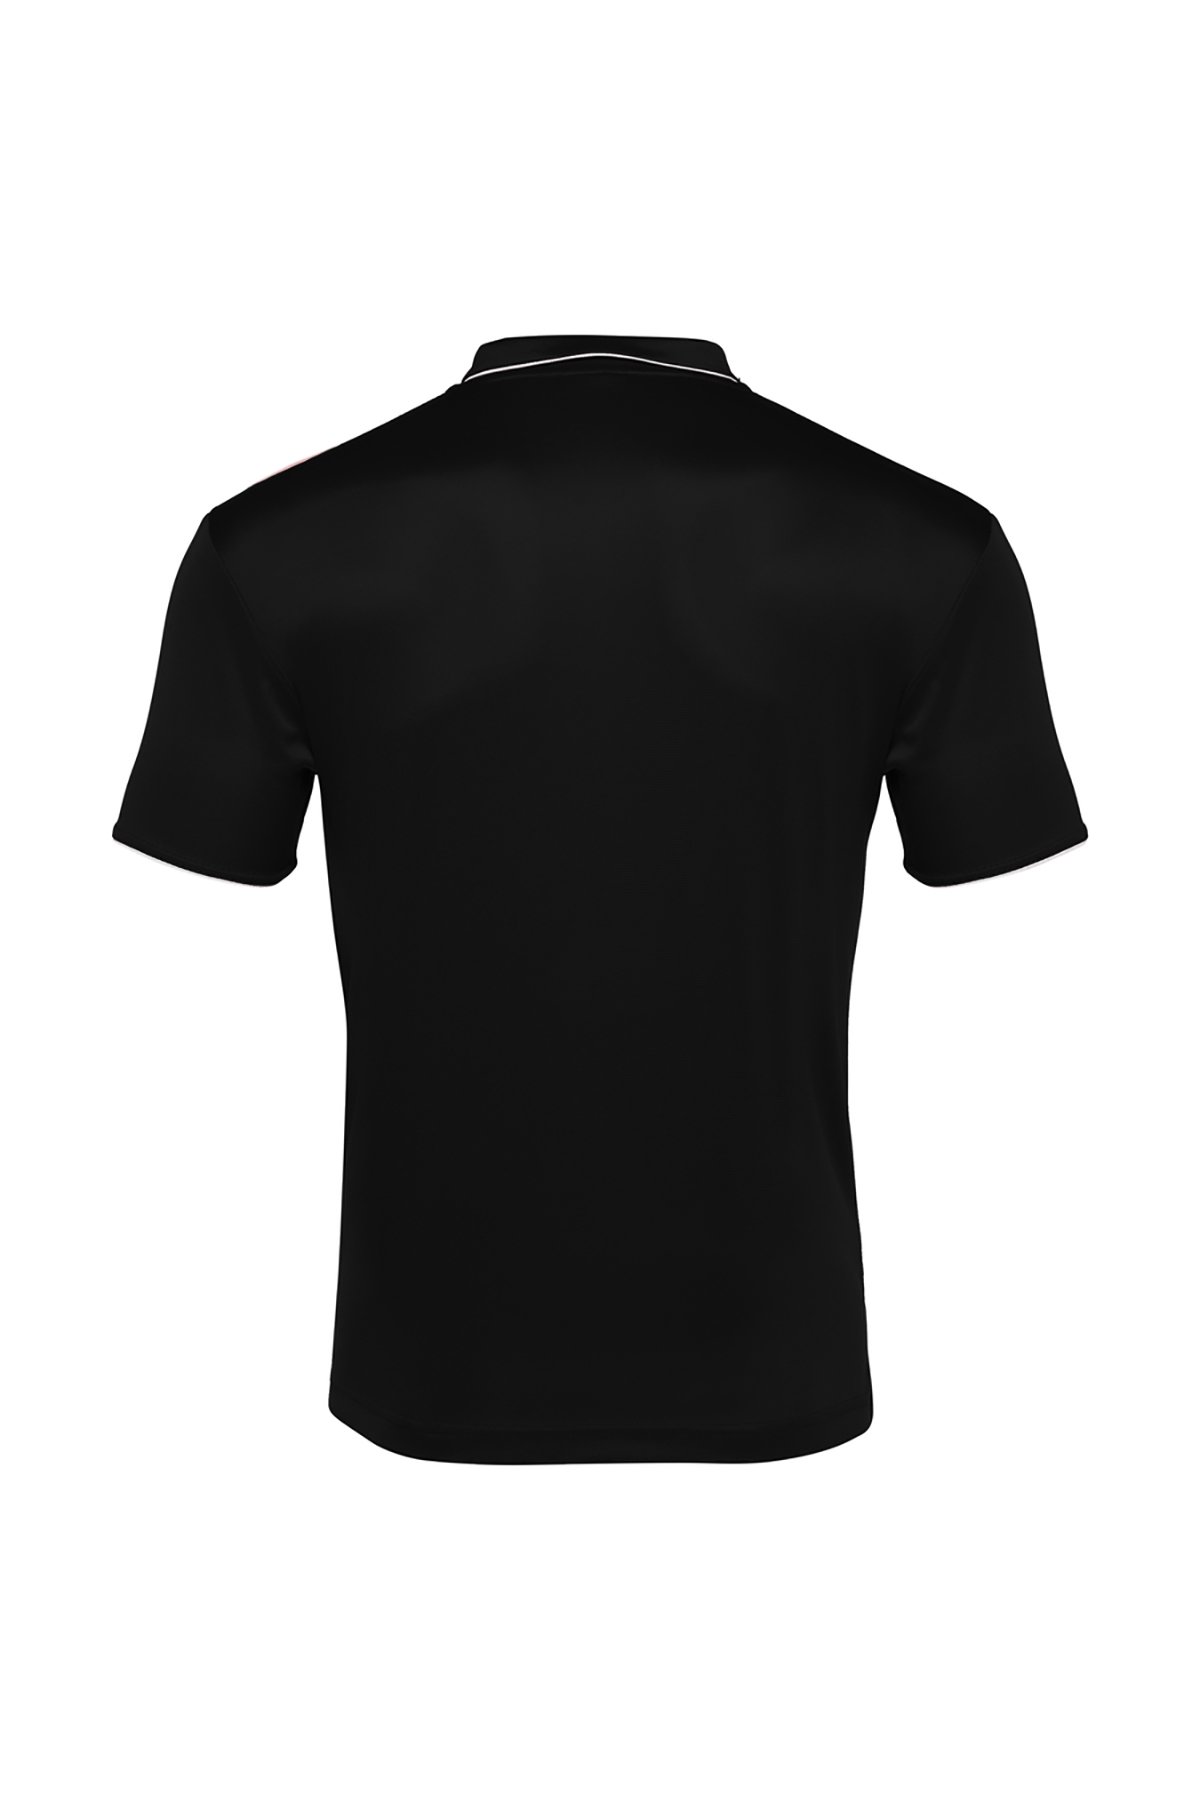 Macron Siyah Polo Yaka T-shirt 90160901 - 2